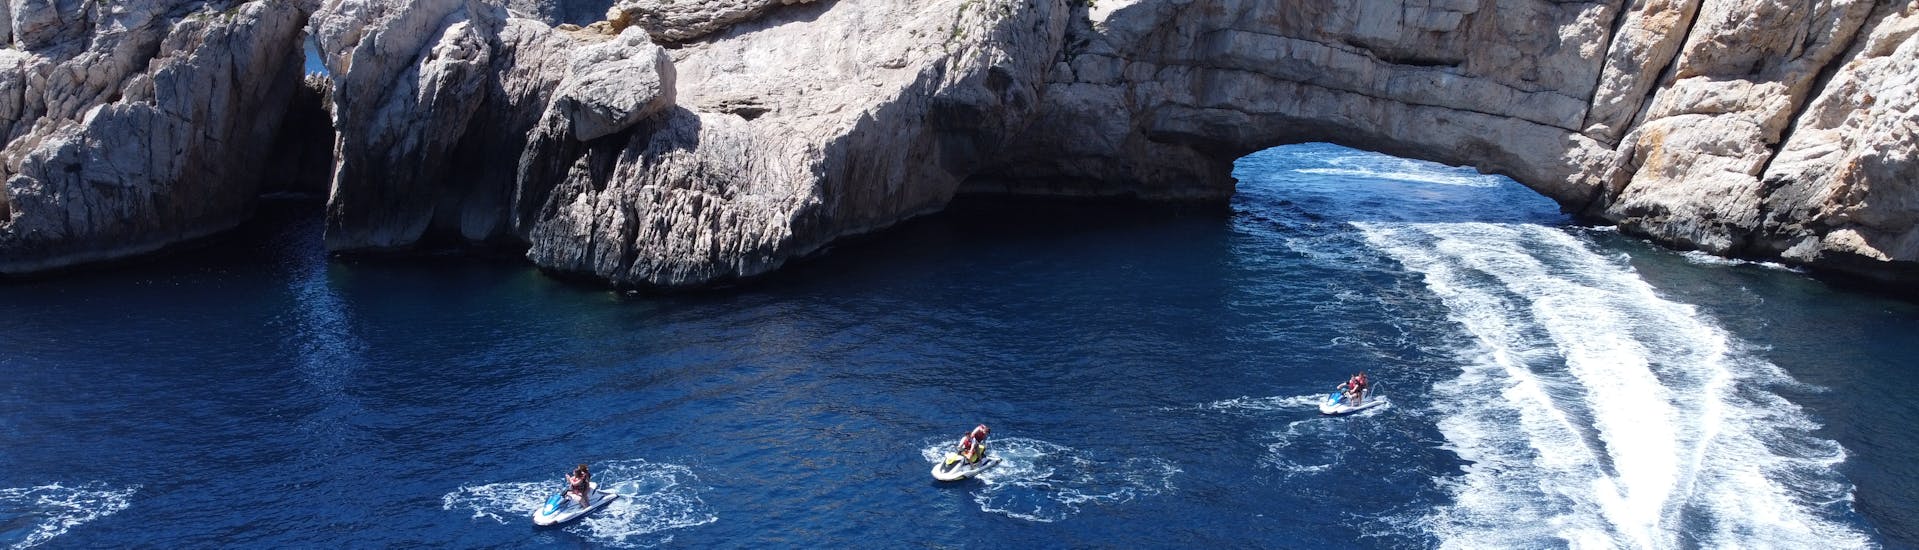 Persone che si godono un'escursione in moto d'acqua a Margarita Island con Es Vedra Charter Ibiza.